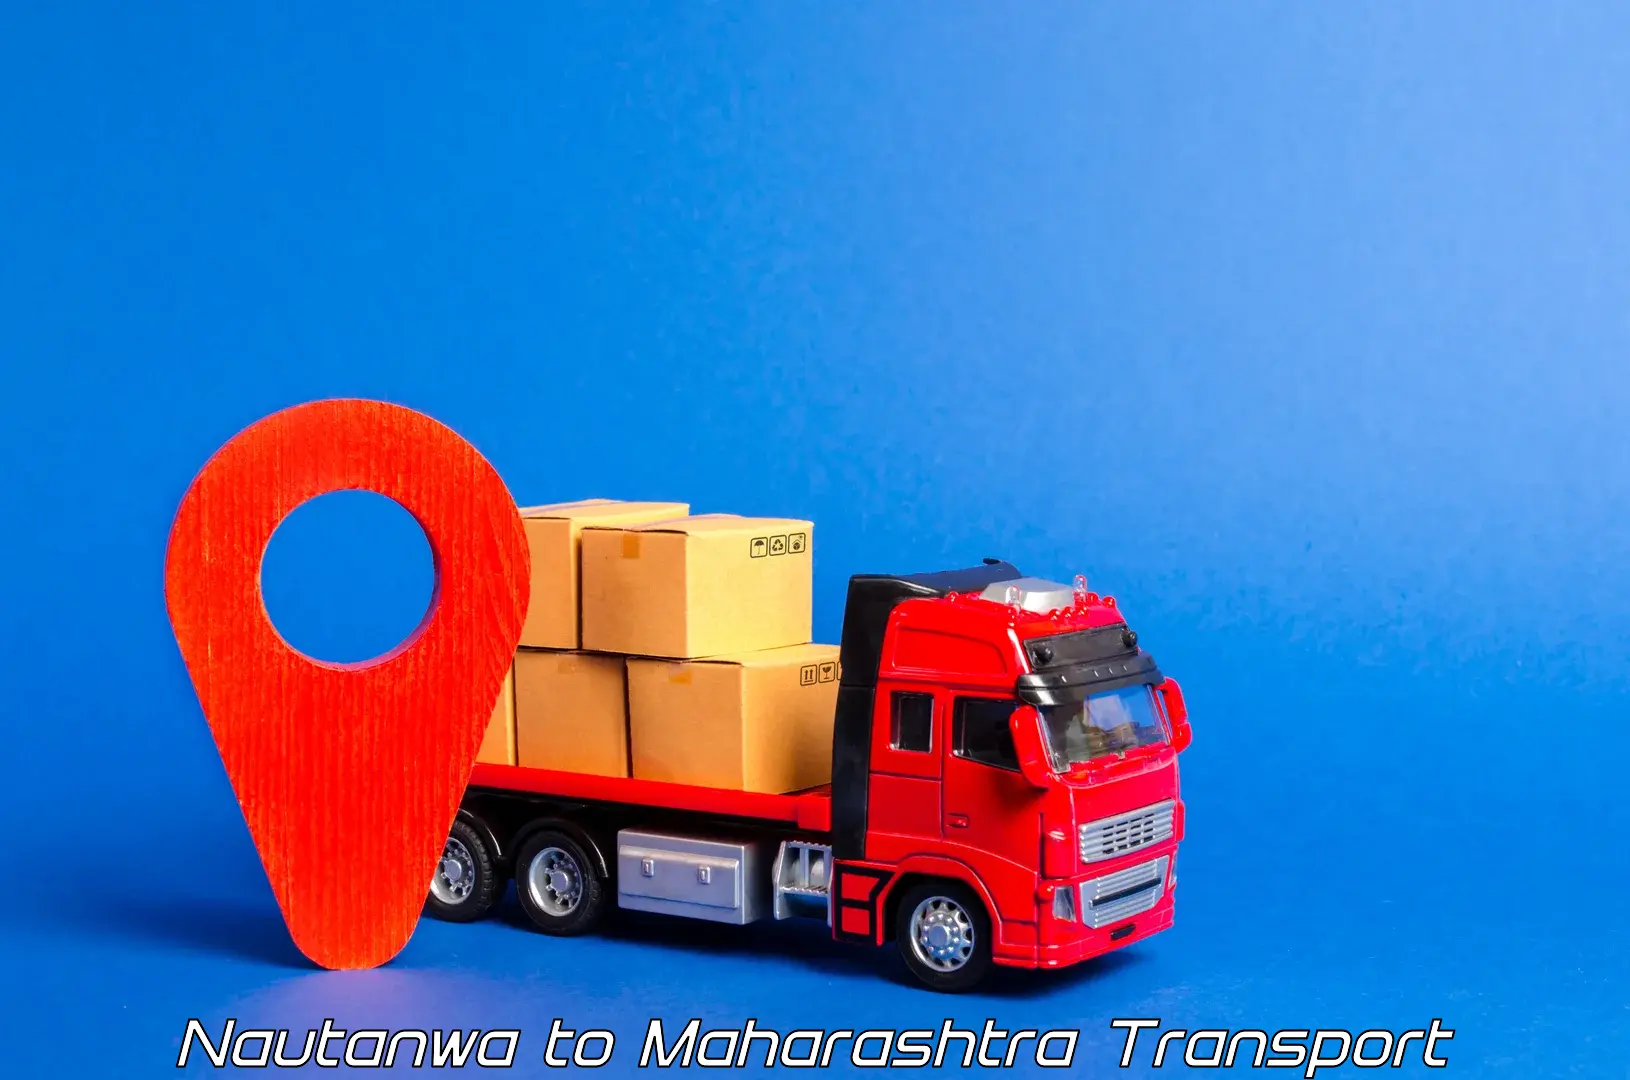 International cargo transportation services Nautanwa to Maharashtra